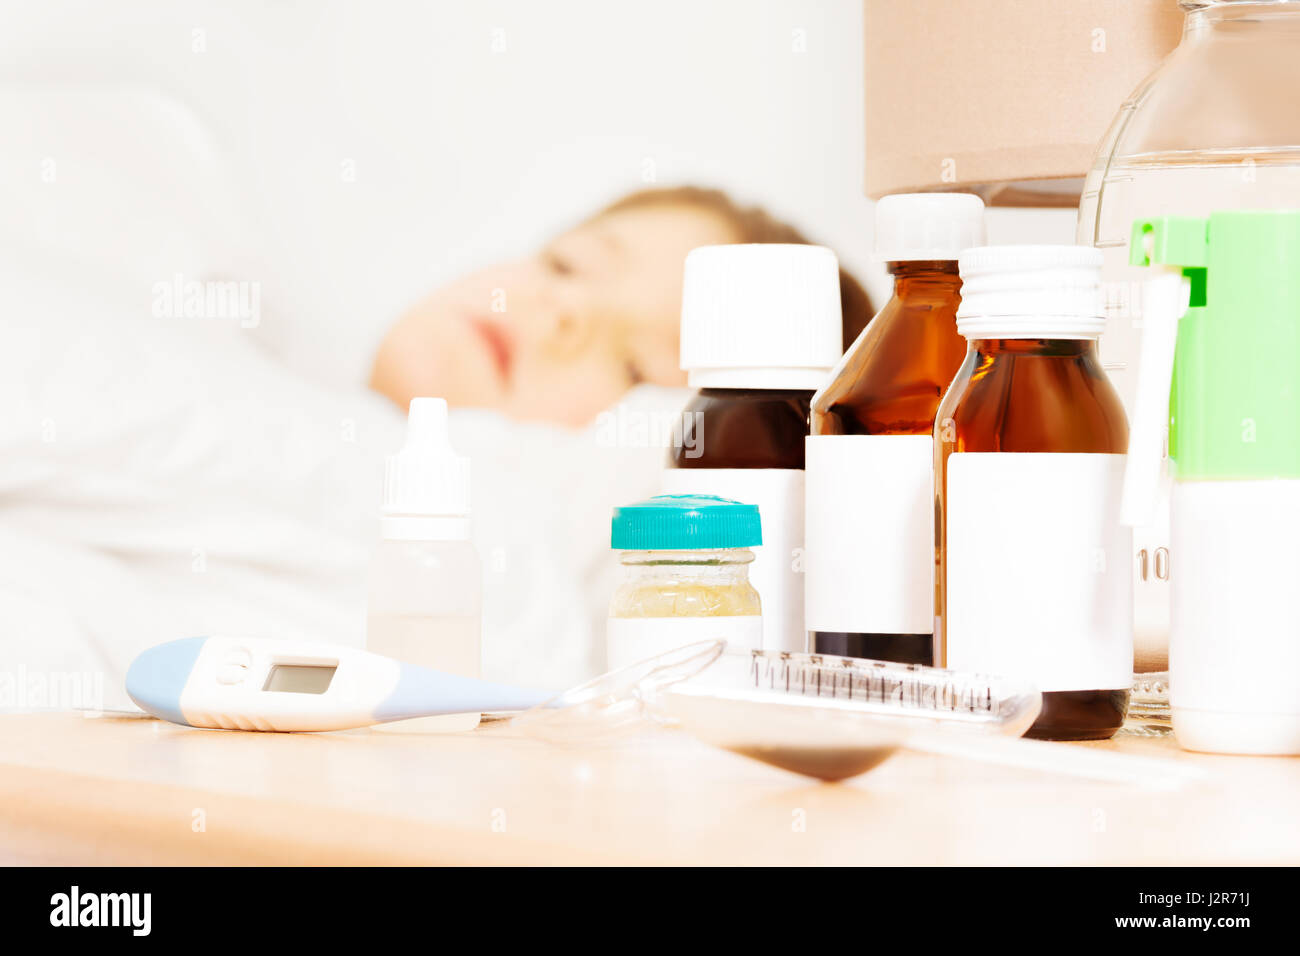 Nahaufnahme Bild des elektronischen Thermometer und Medikamente Flaschen mit ausgeblendeten Beschriftungen auf Bett-Tisch für die Behandlung der Kranken jungen Stockfoto